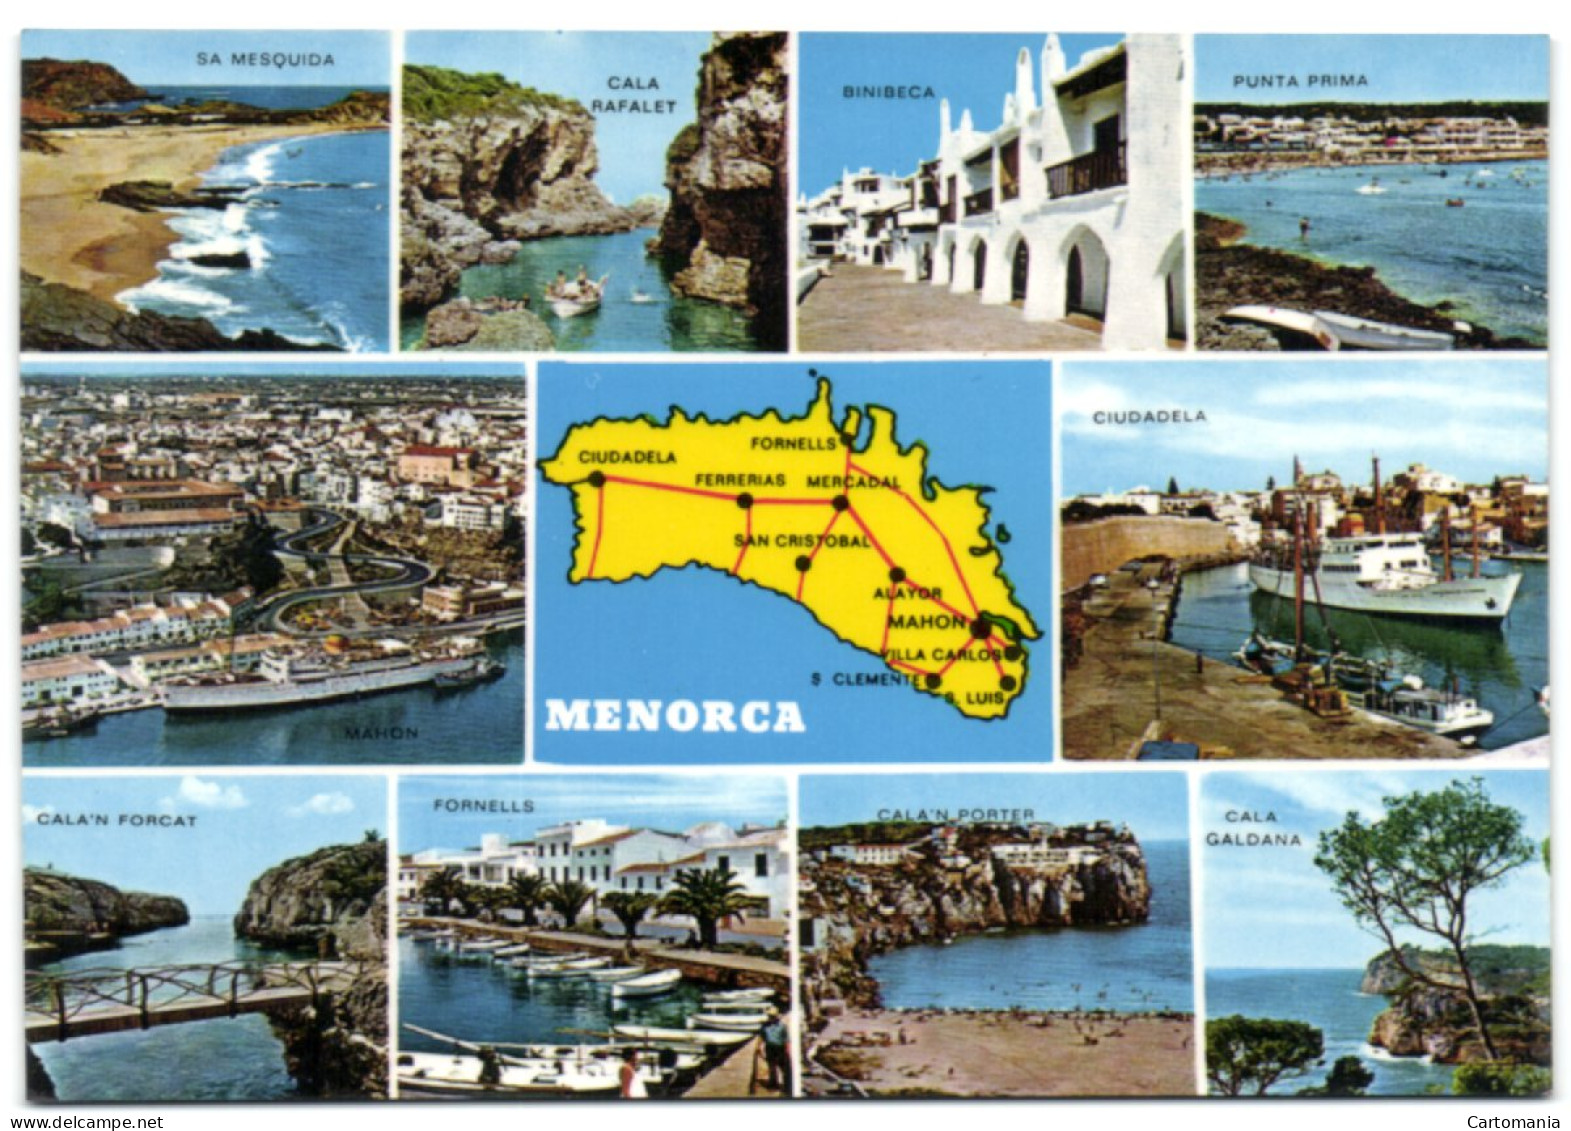 Menorca - Menorca